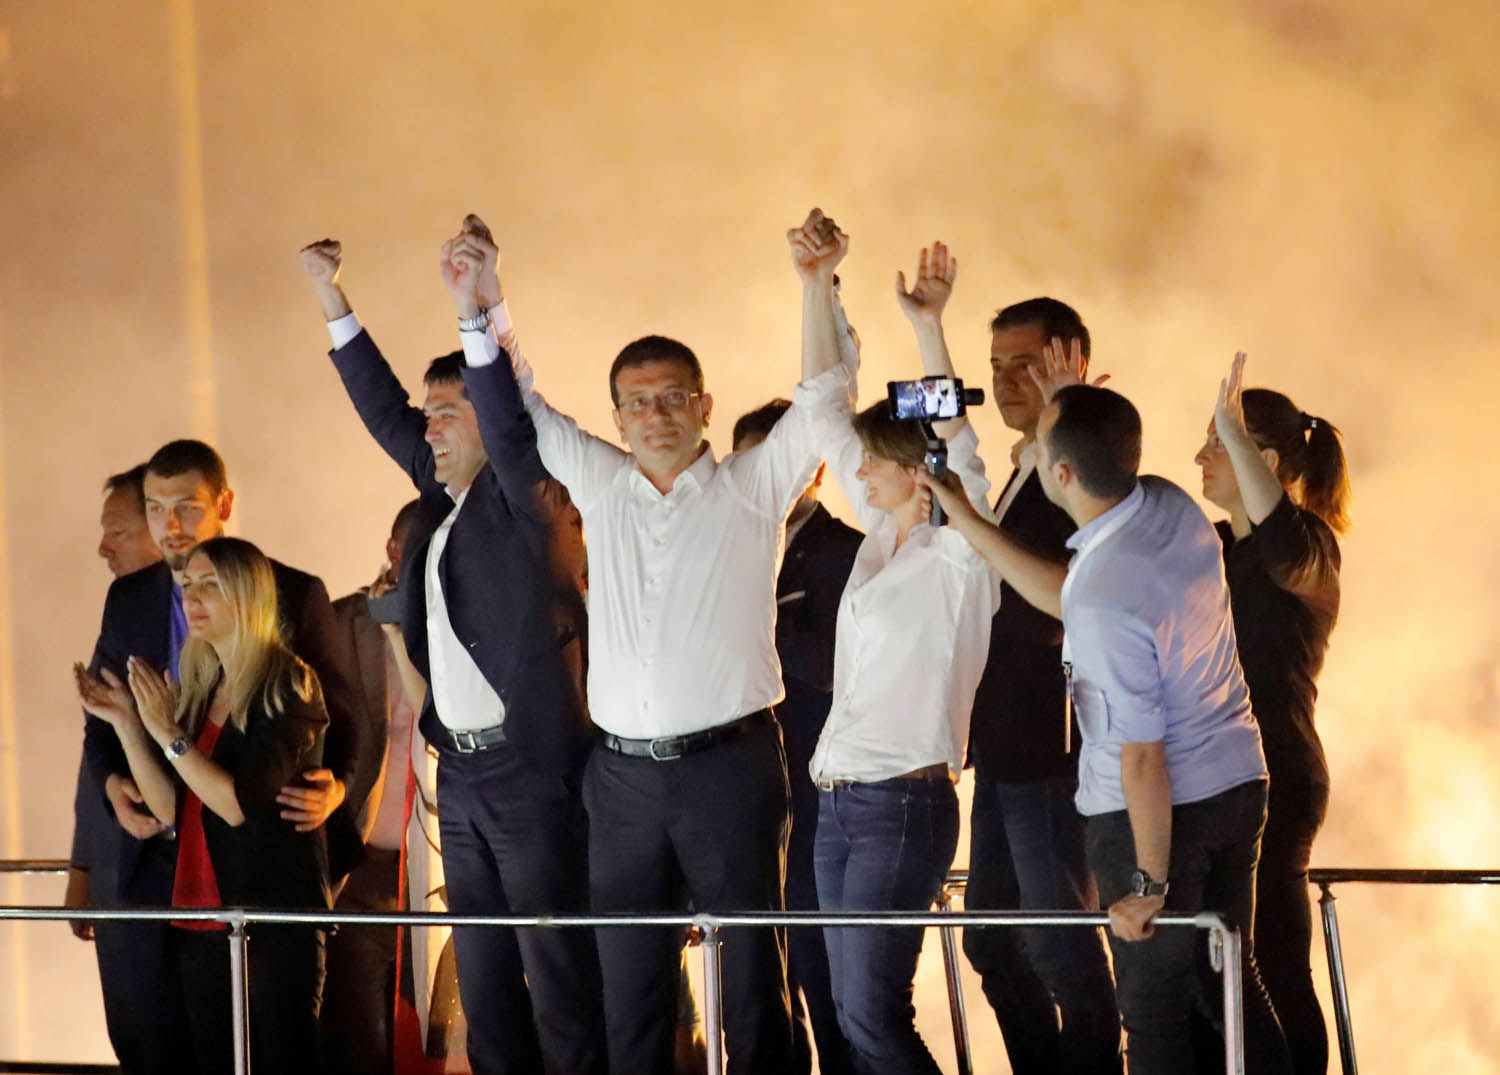 أكرم امام أوغلو يحتفل بانتصاره الكبير في اسطنبول